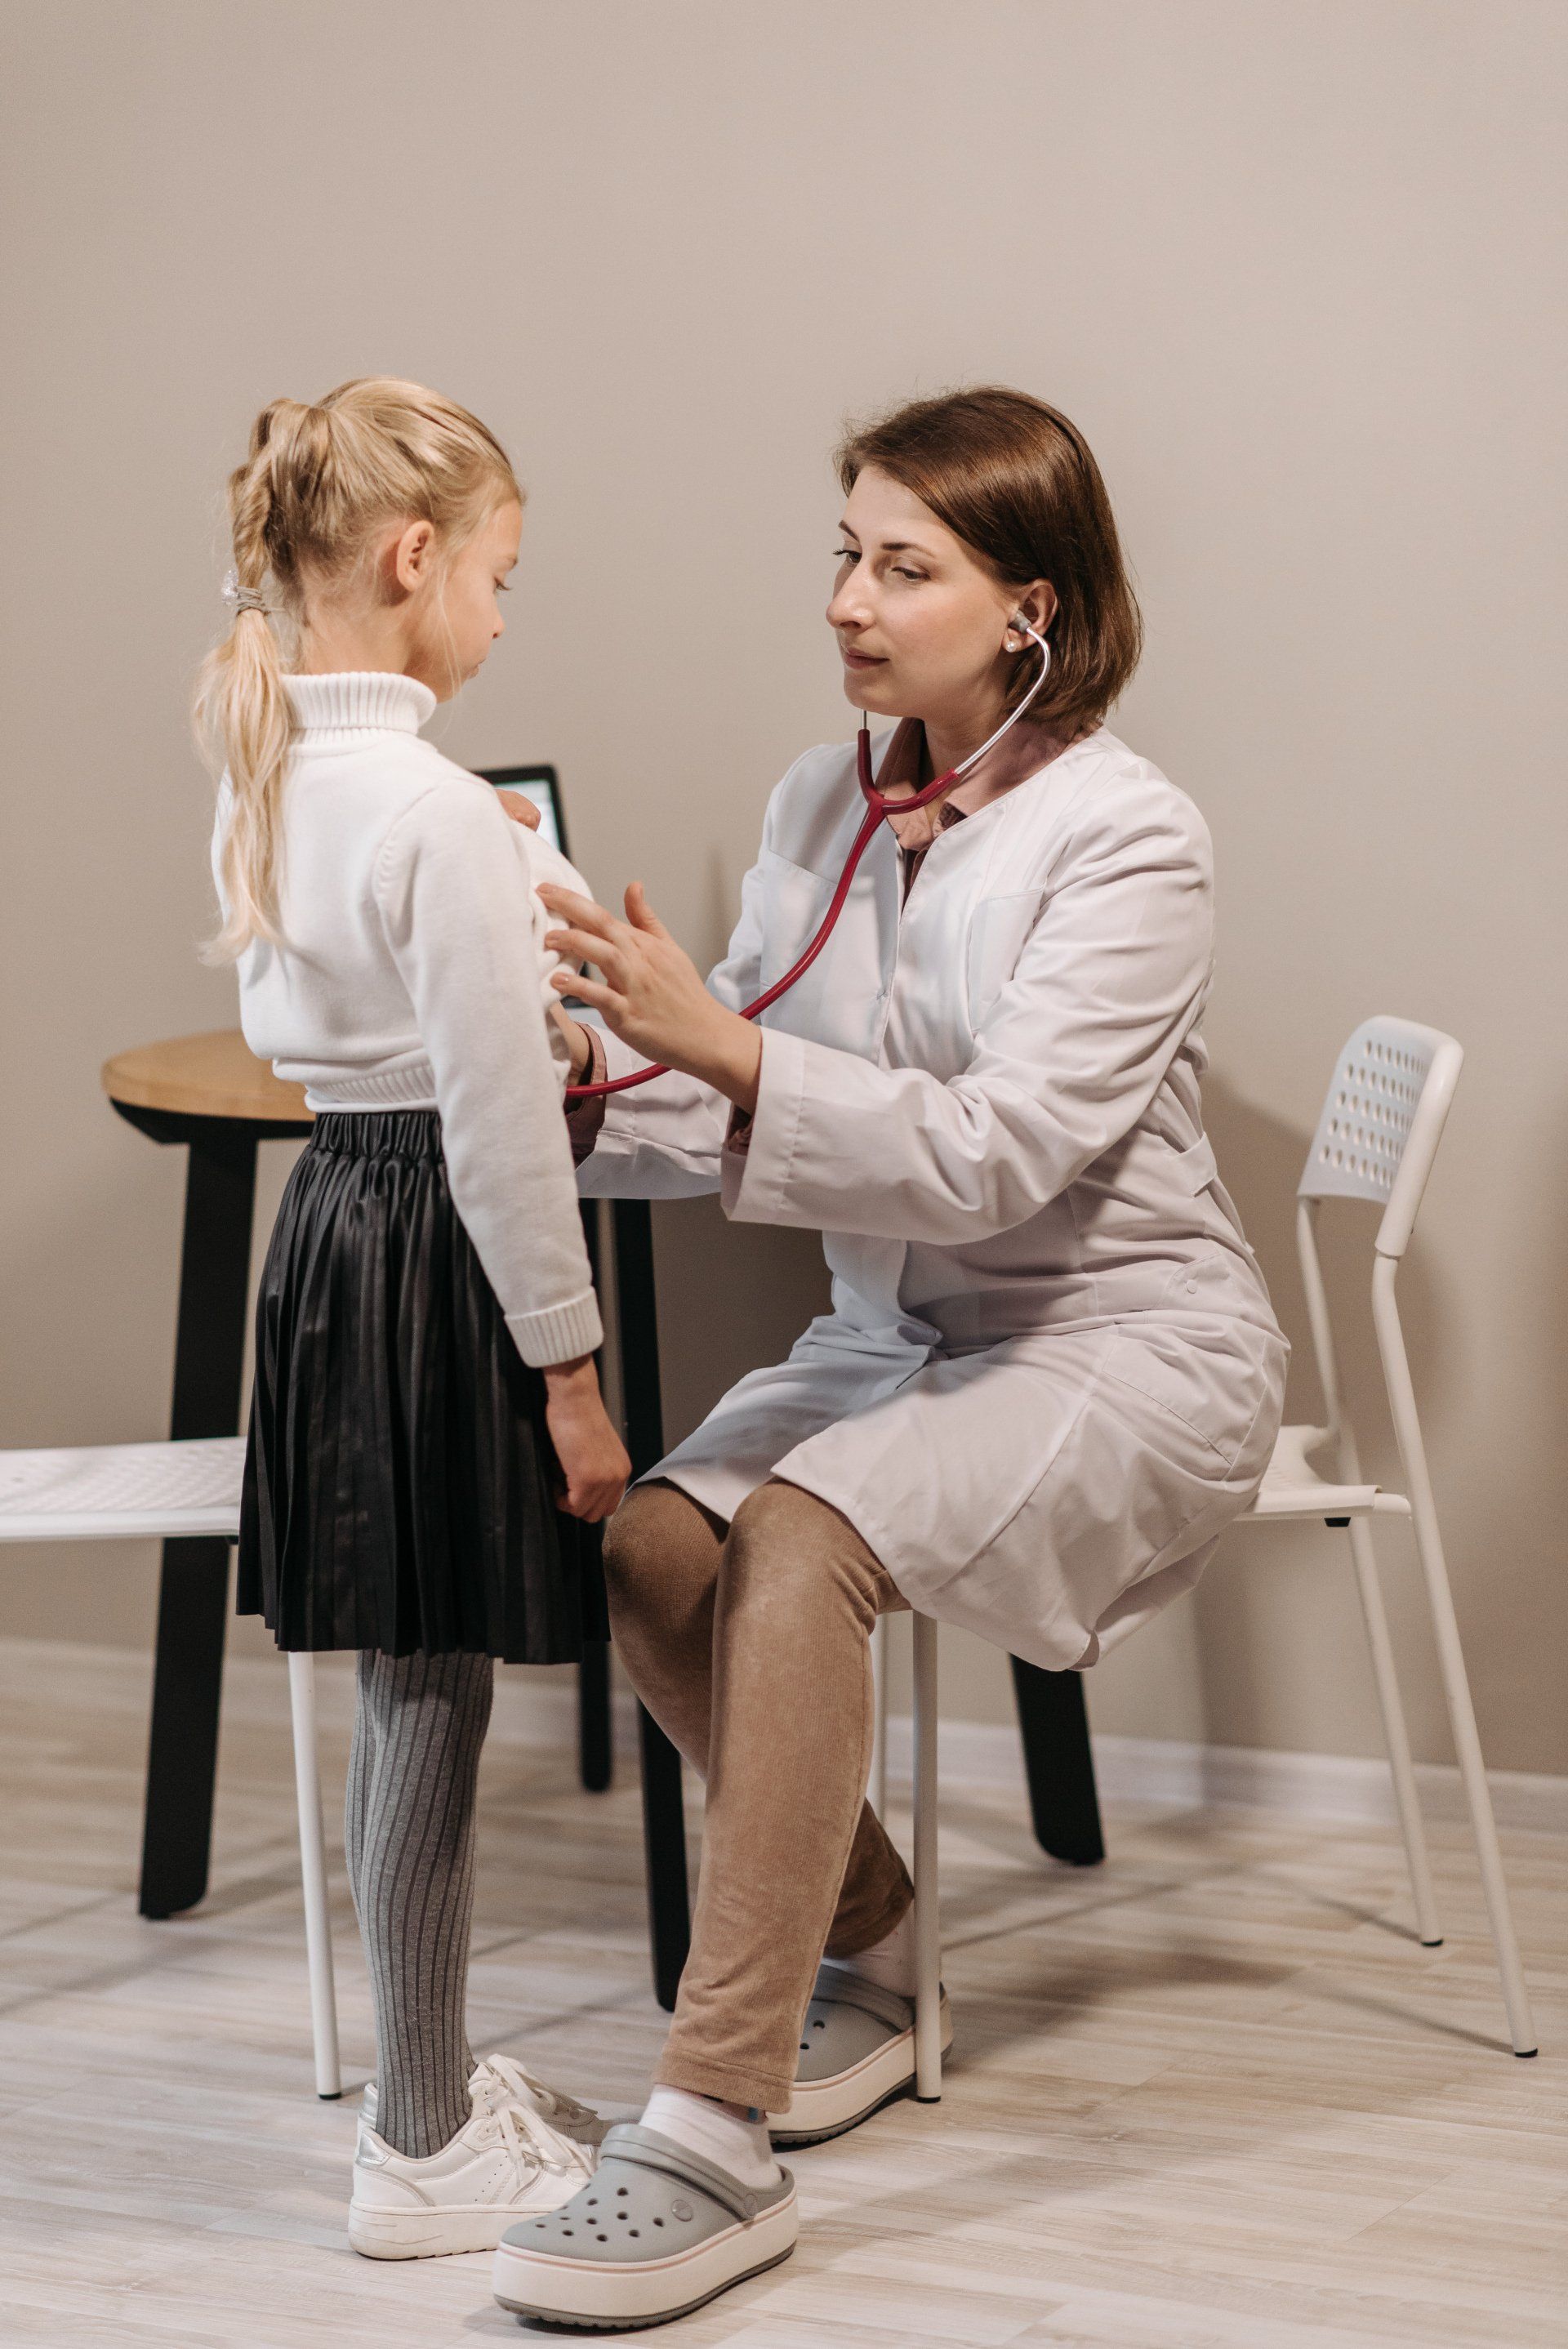 Un medico usa uno stetoscopio per ascoltare il battito cardiaco di una bambina.